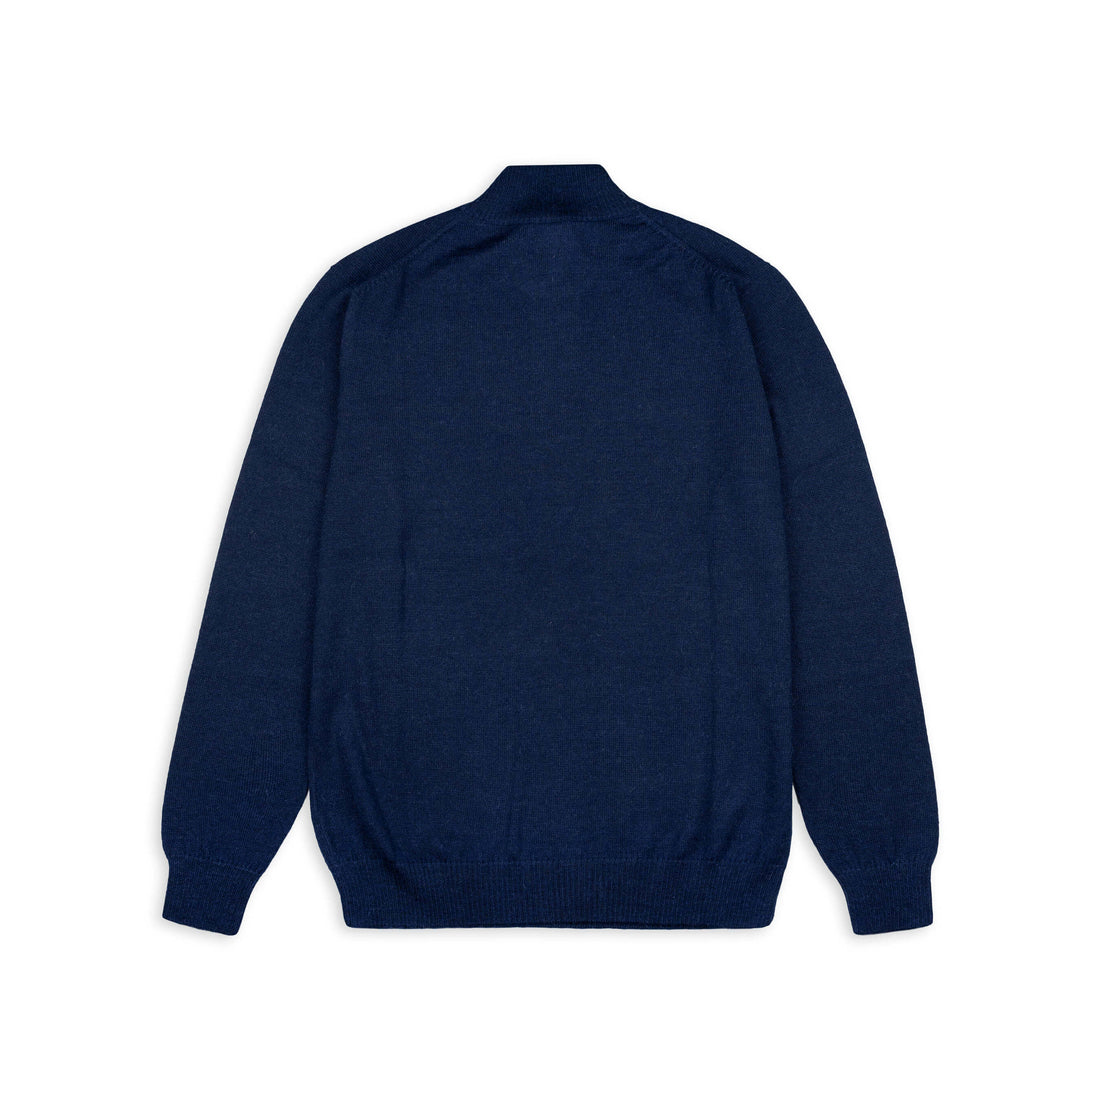 Alpakin Katari Alpaka Pullover für Herren mit Reißverschluss in dunkelblau von hinten